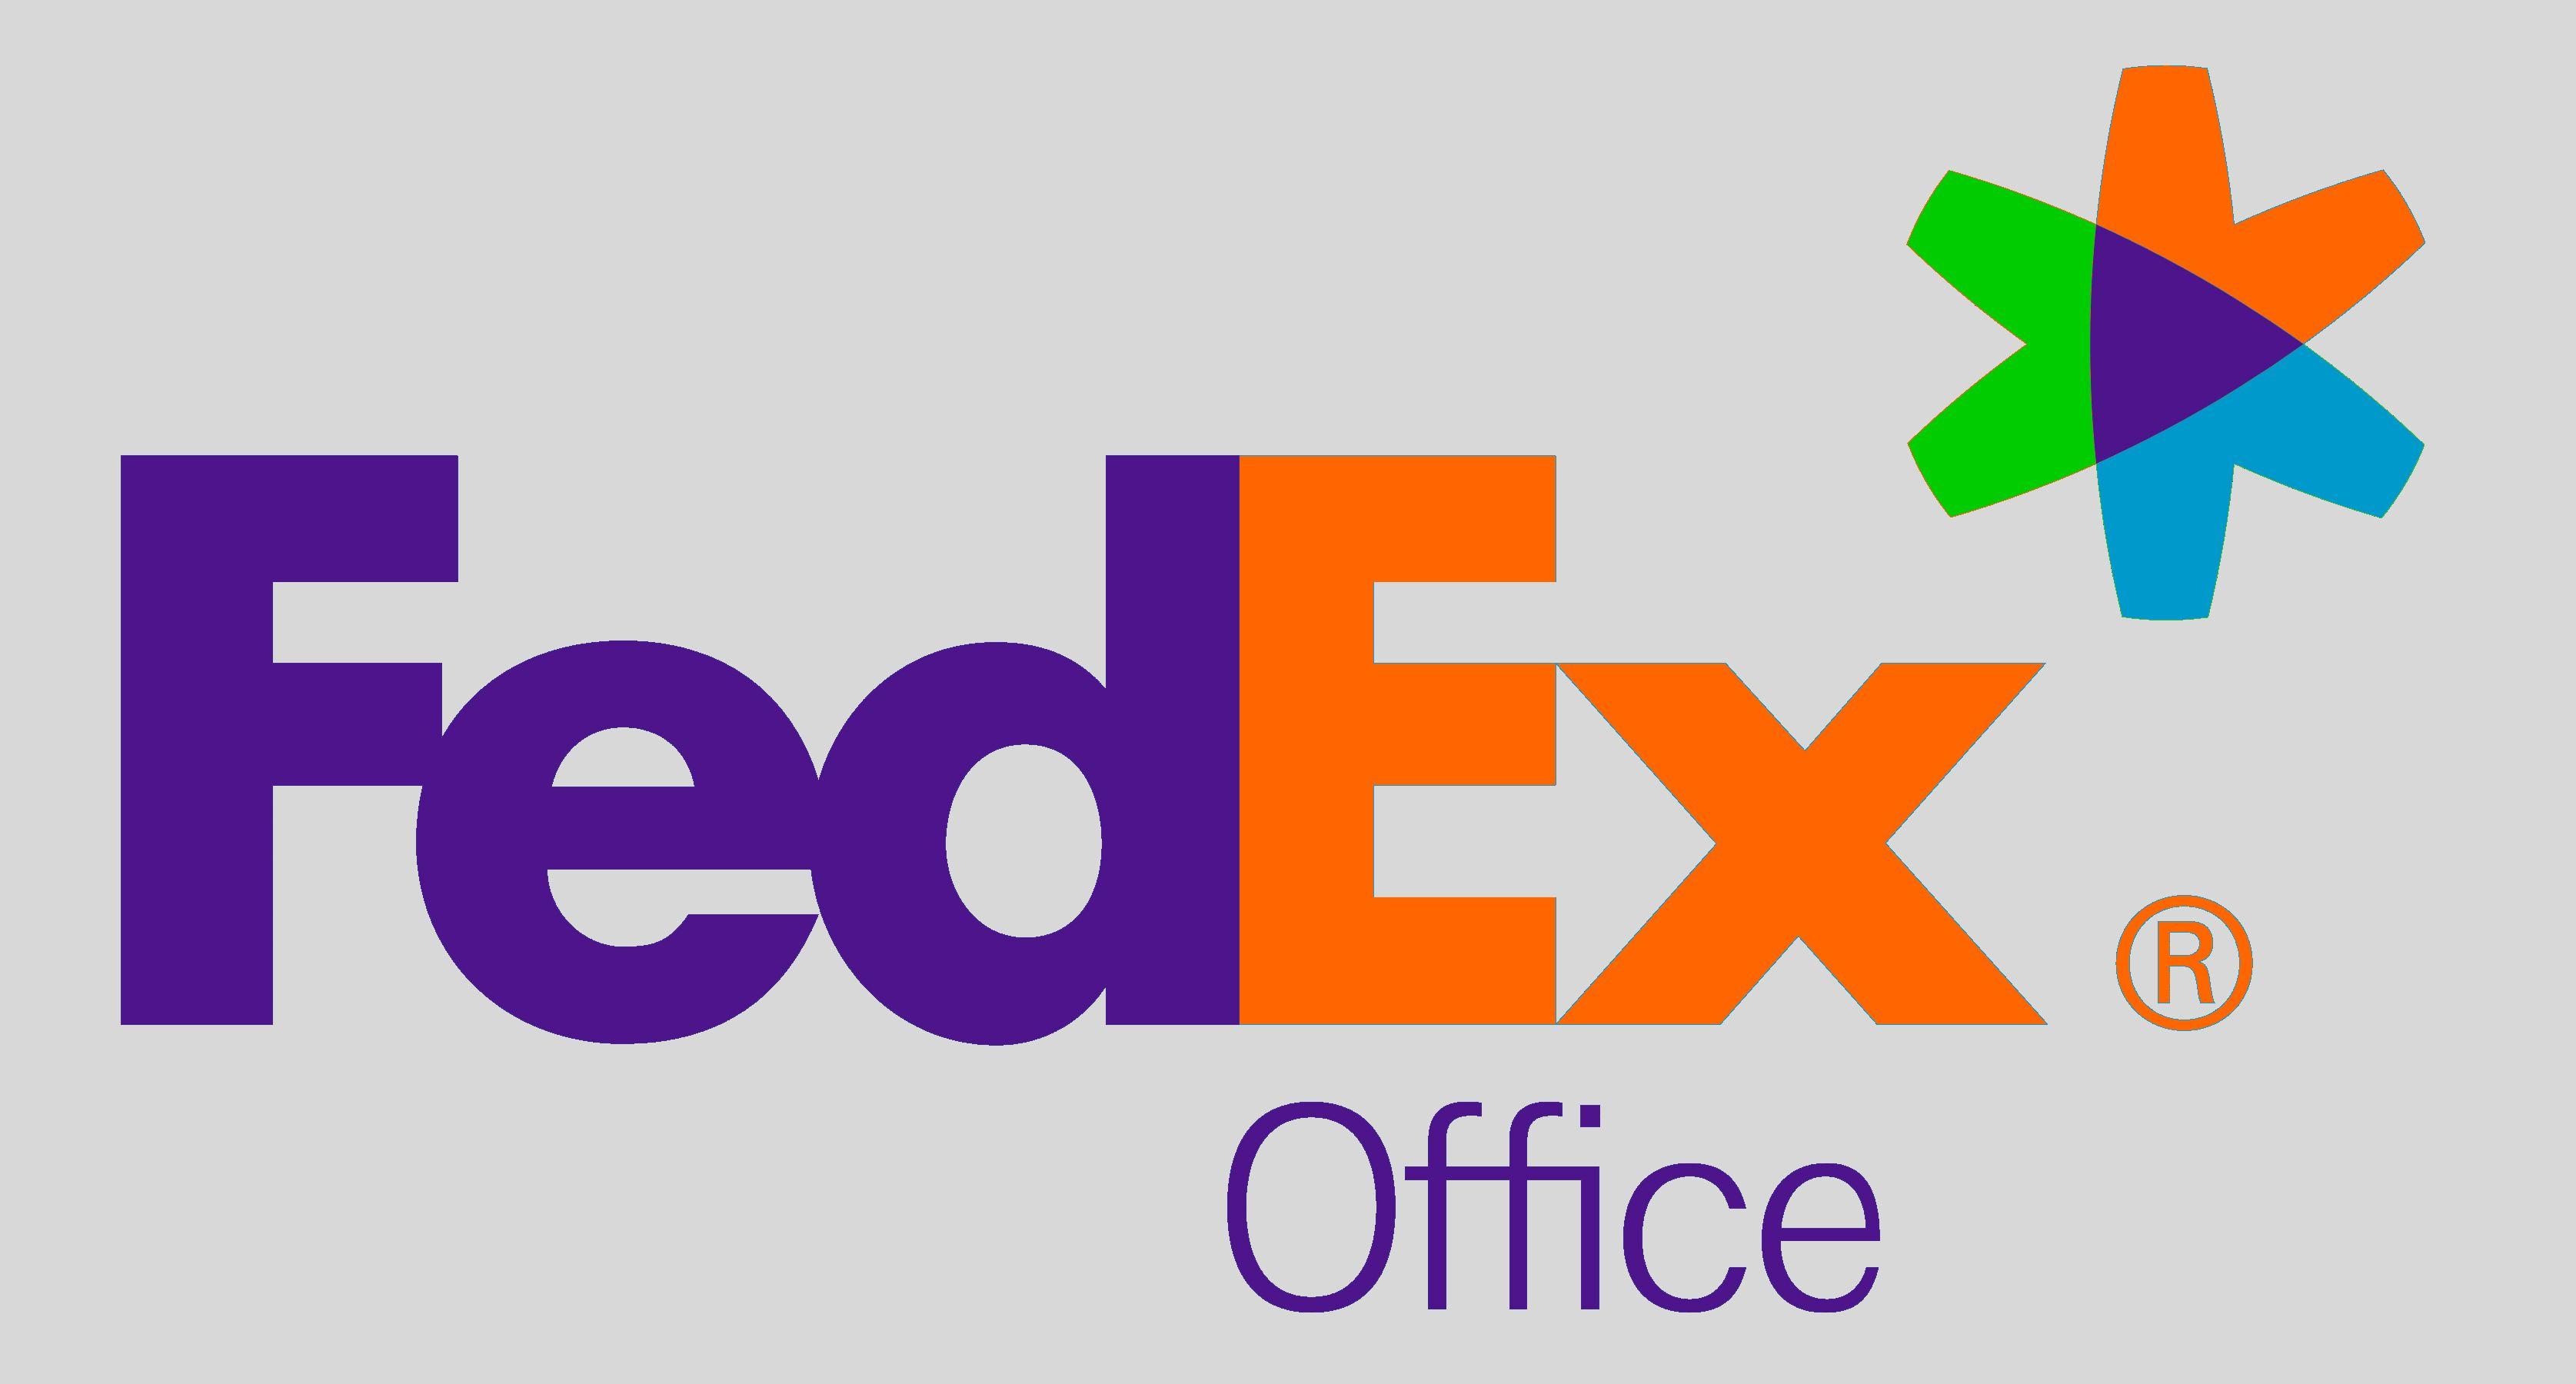 FedEx Official Logo - FedEx Logo, FedEx Symbol, Meaning, History and Evolution